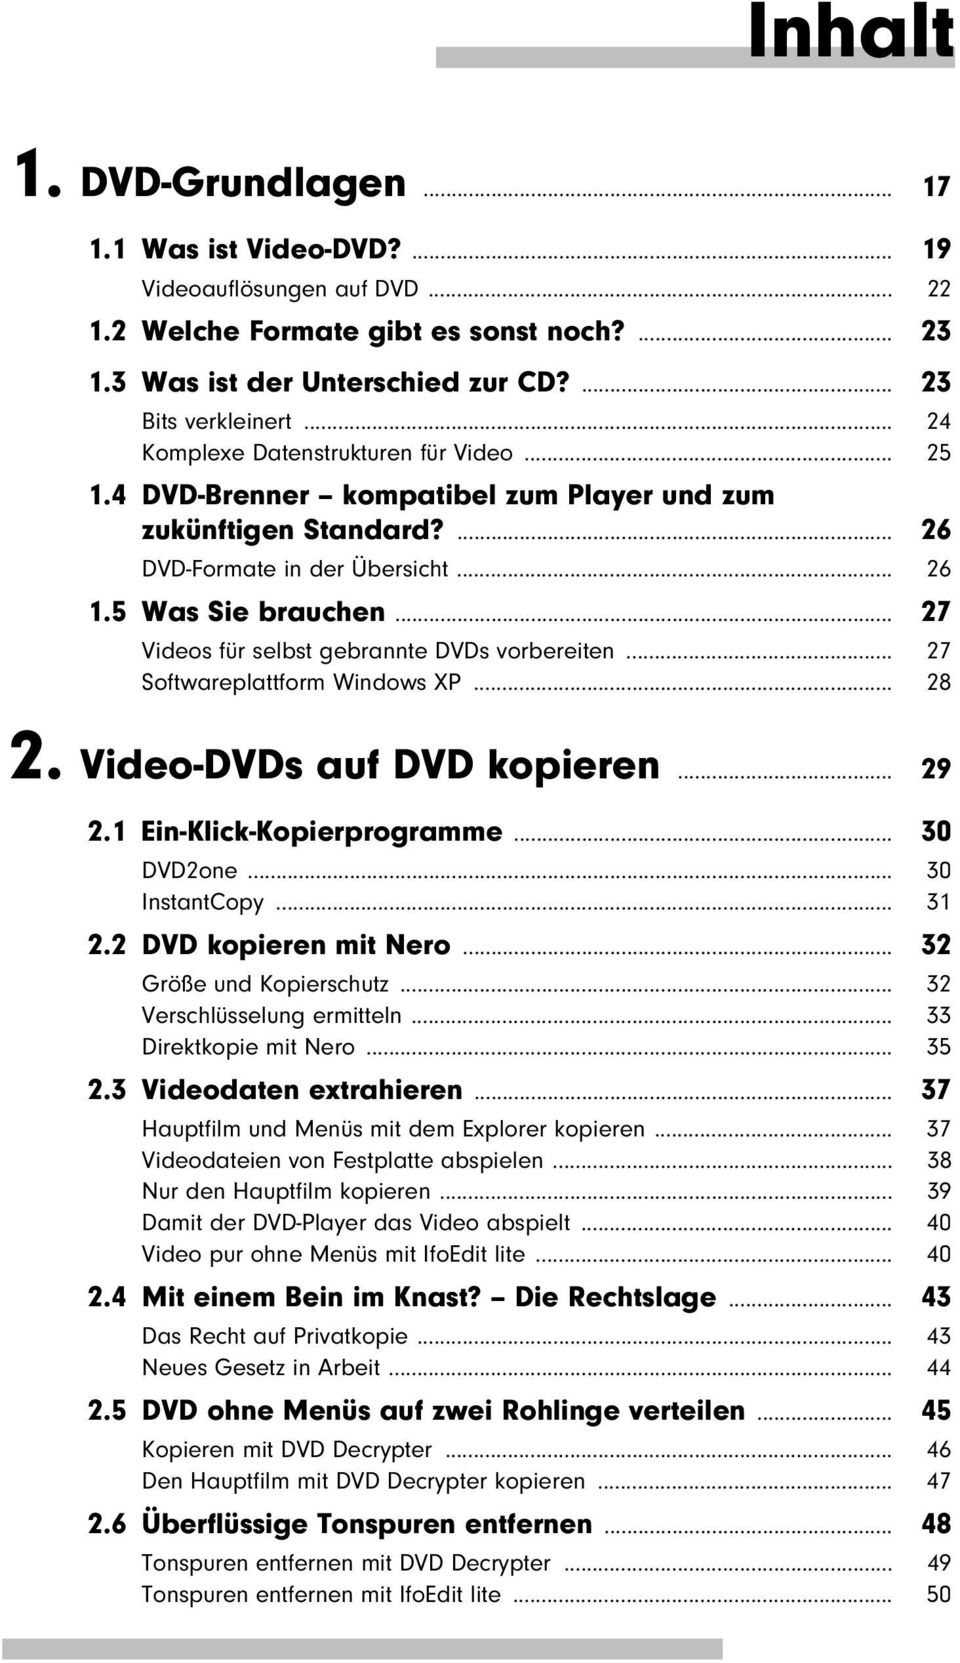 .. 27 Videos für selbst gebrannte DVDs vorbereiten... 27 Softwareplattform Windows XP... 28 2. Video-DVDs auf DVD kopieren... 29 2.1 Ein-Klick-Kopierprogramme... 30 DVD2one... 30 InstantCopy... 31 2.